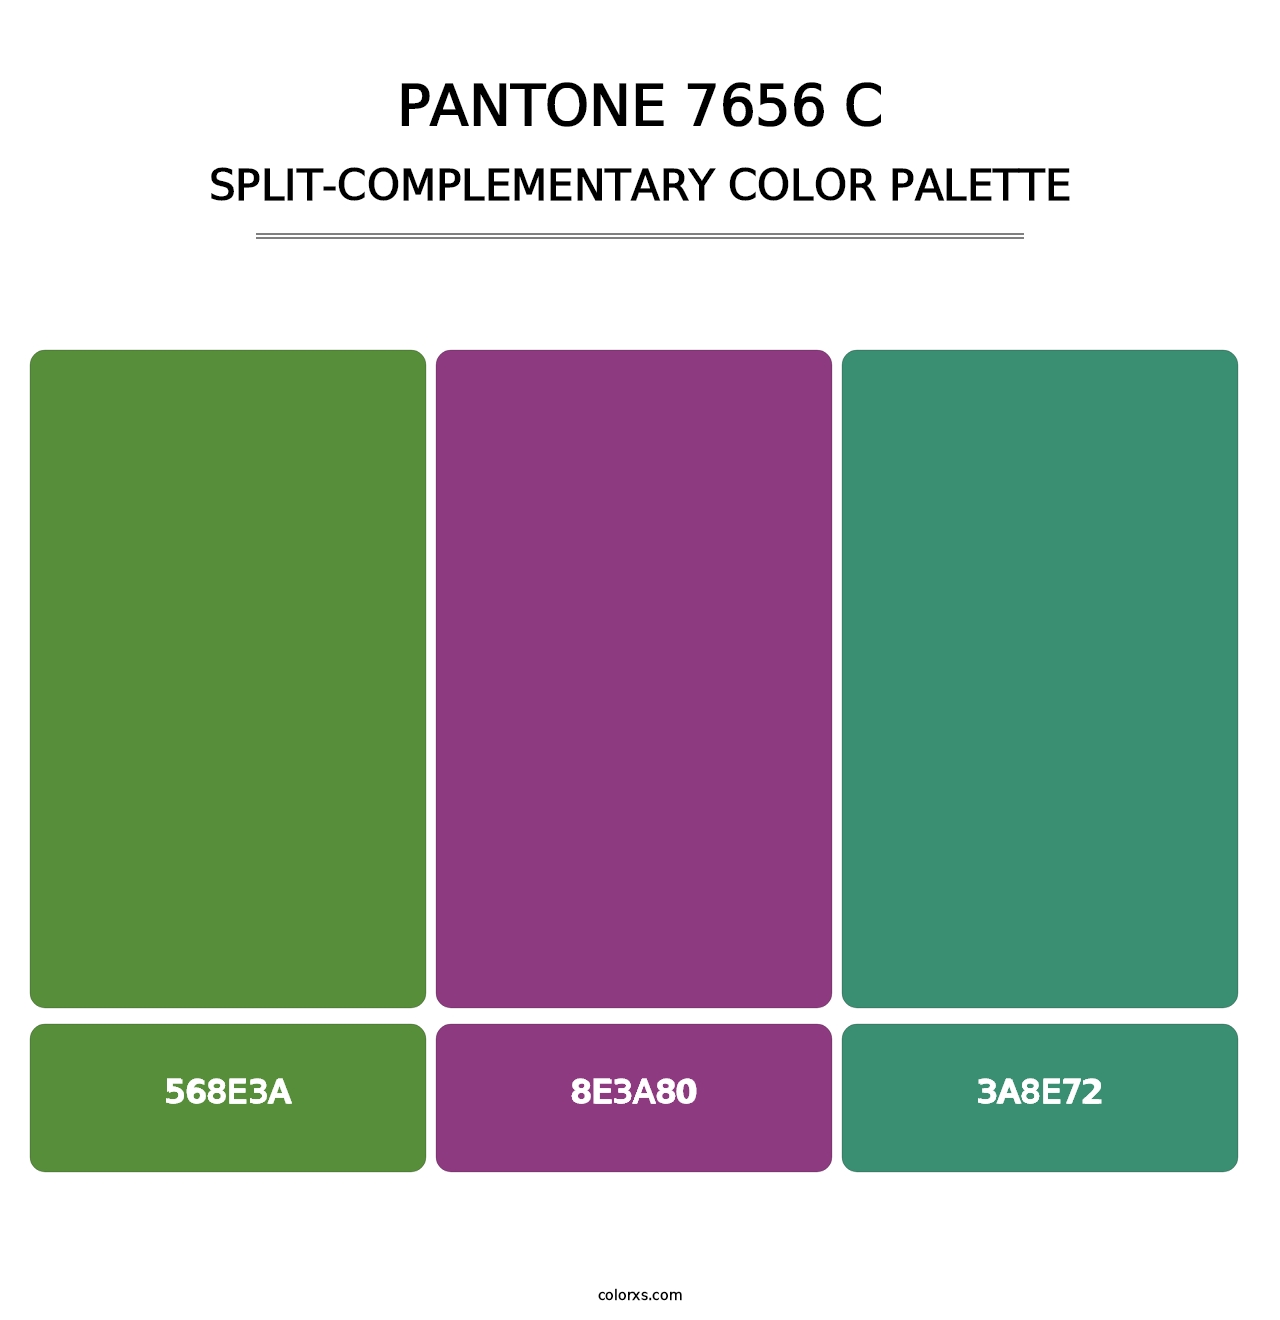 PANTONE 7656 C - Split-Complementary Color Palette